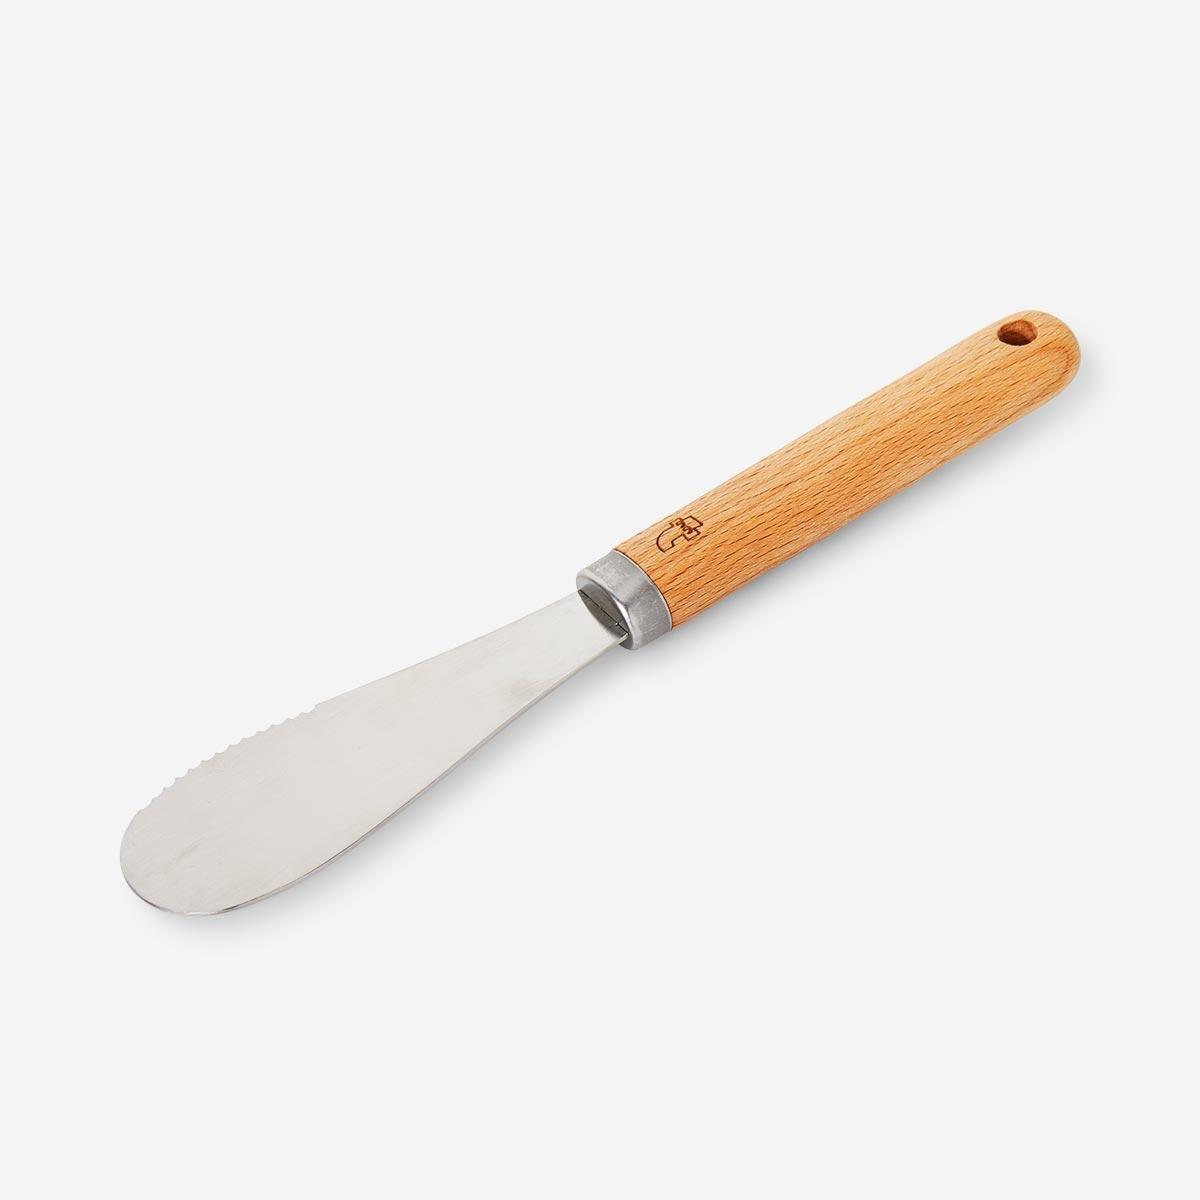 Steel butter knife